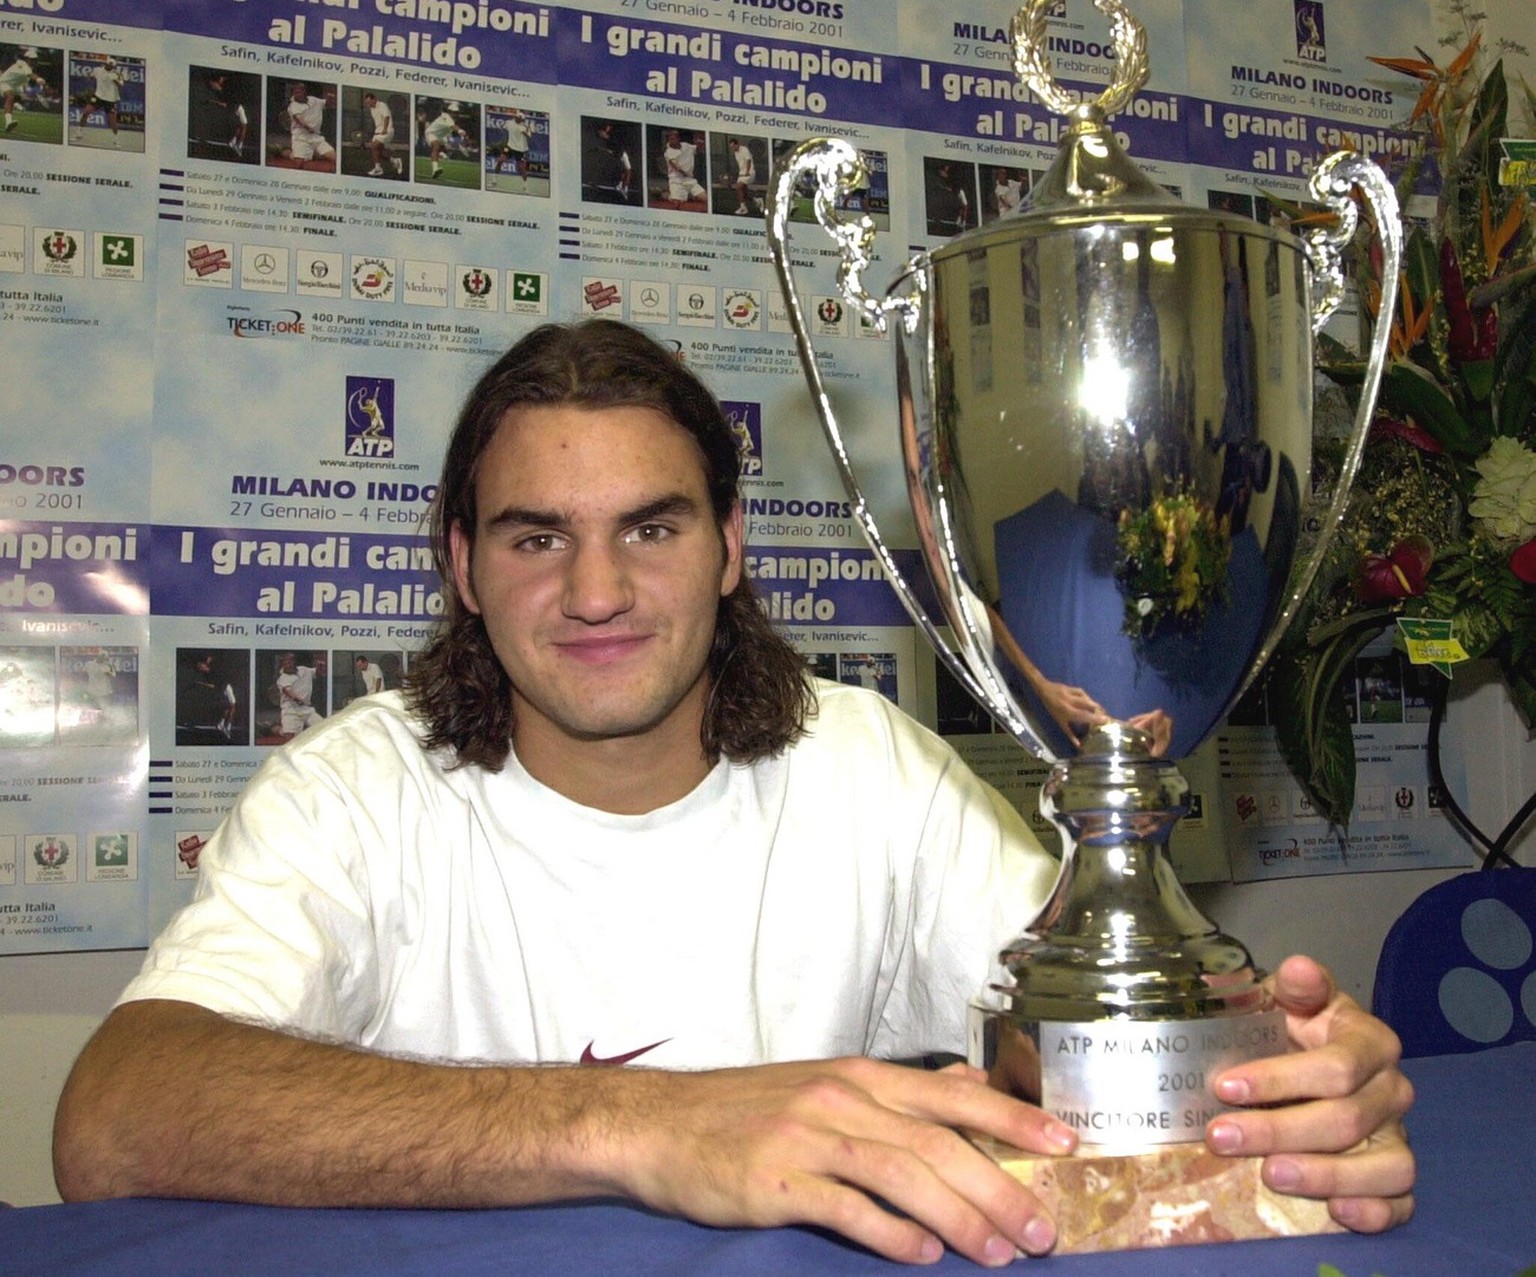 Roger Federer als Milano Indoor Sieger, am 4. Februar 2001 in Mailand. (KEYSTONE/Karl Mathis) === ELECTRONIC IMAGE ===